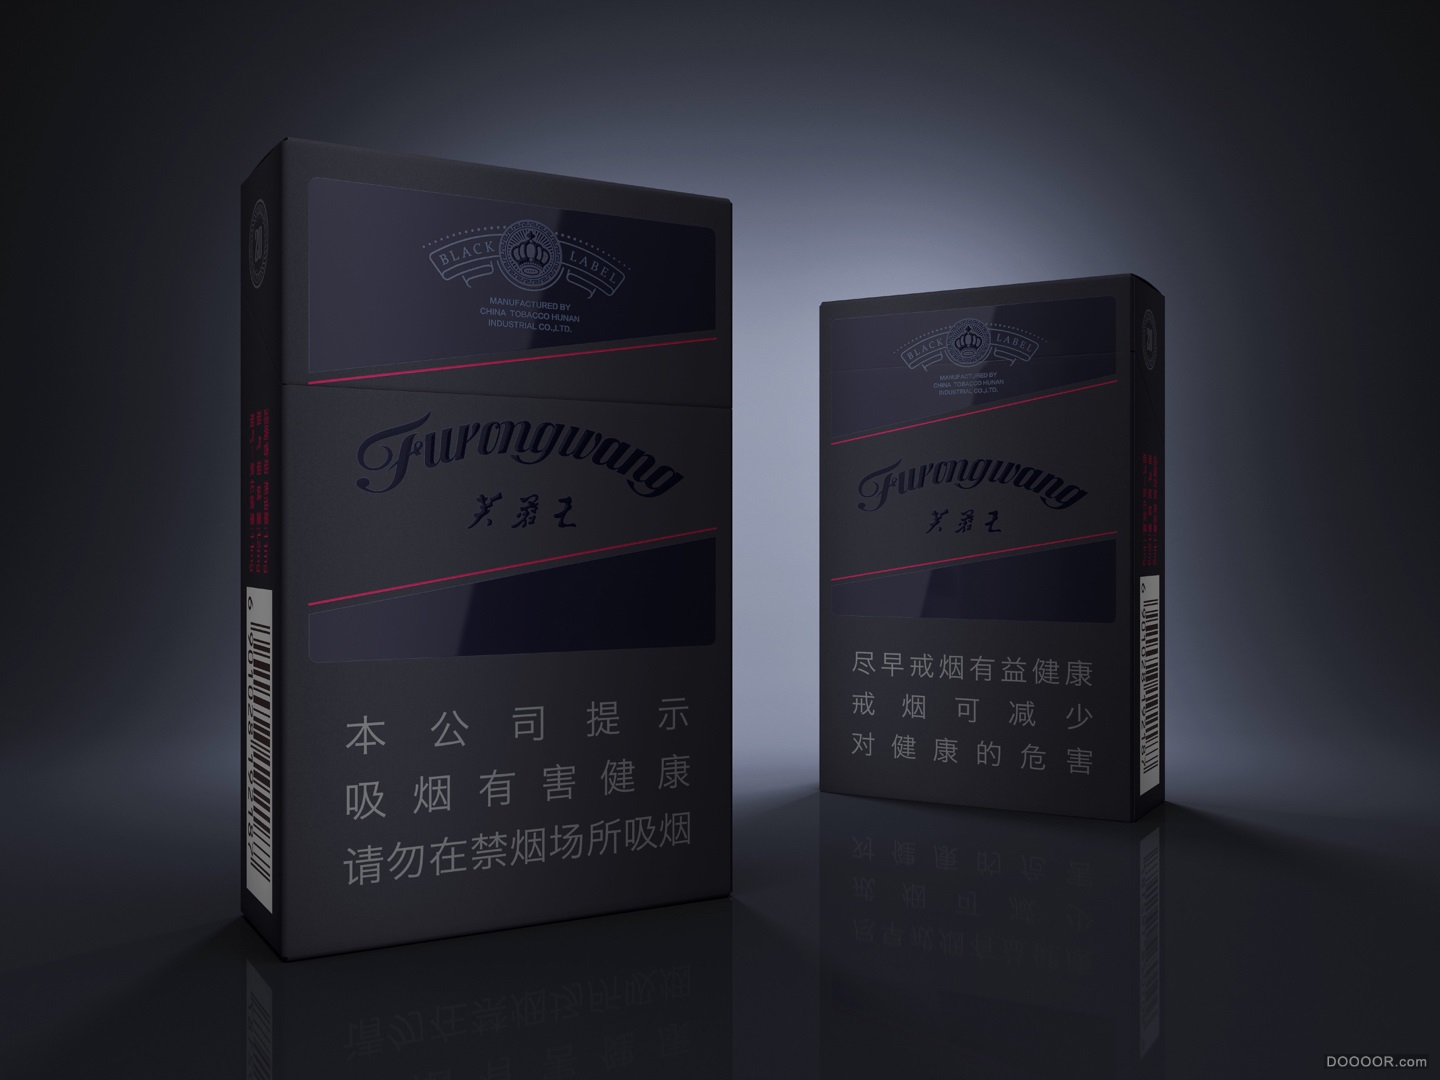 芙蓉王 带系列 Furongwang Label香烟包装设计 [13P] - 国内设计